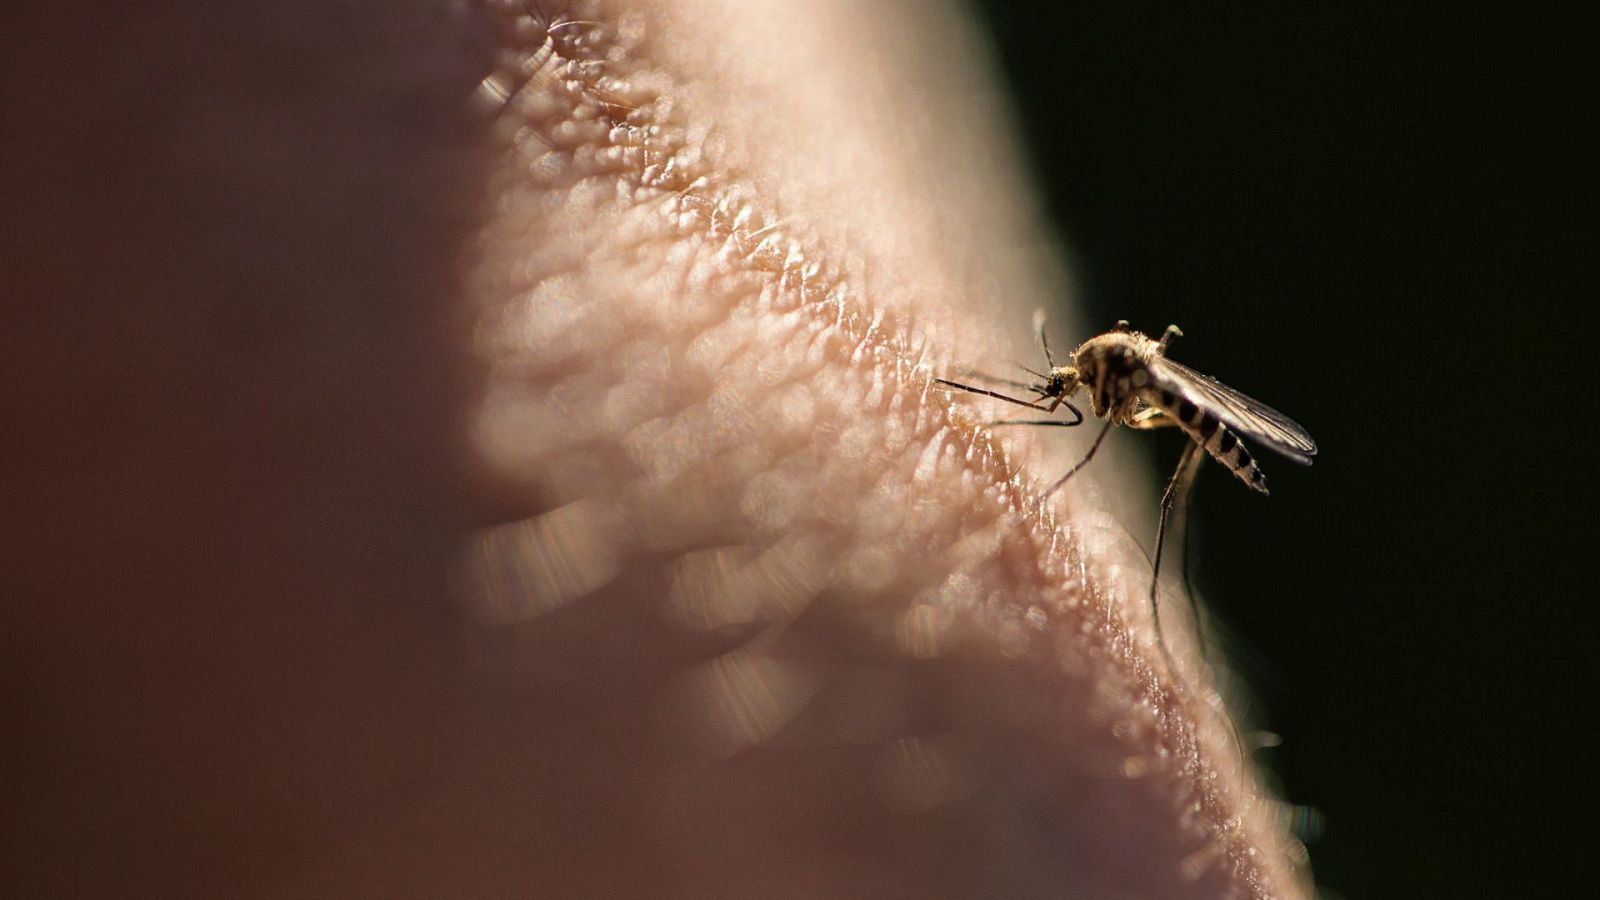 Plaga de mosquitos en Barcelona en pleno invierno